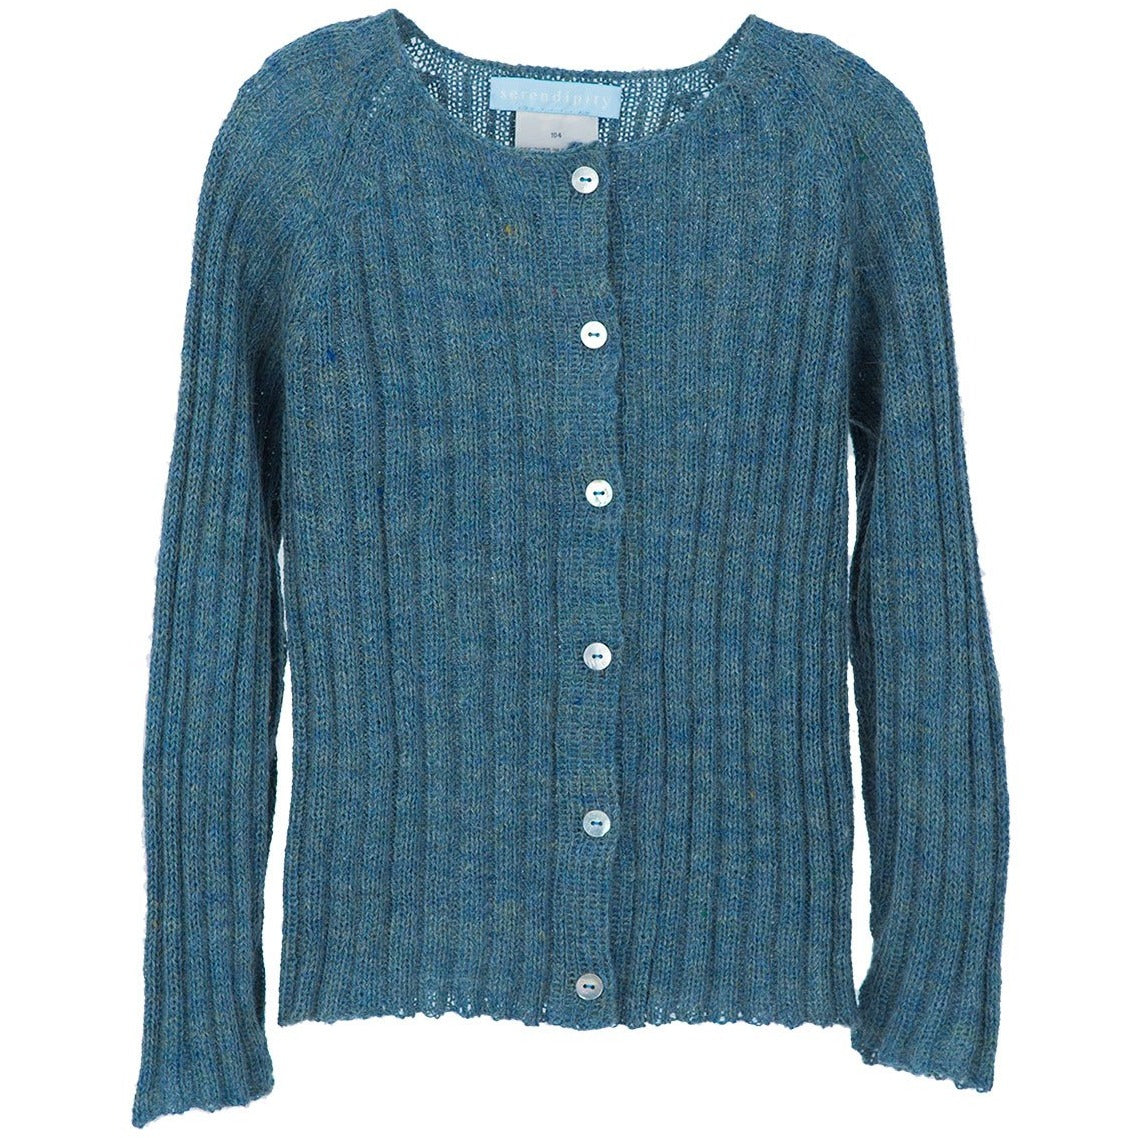 Cardigan tricotat fin pentru fete din lana baby alpaca, Albastru Serendipity